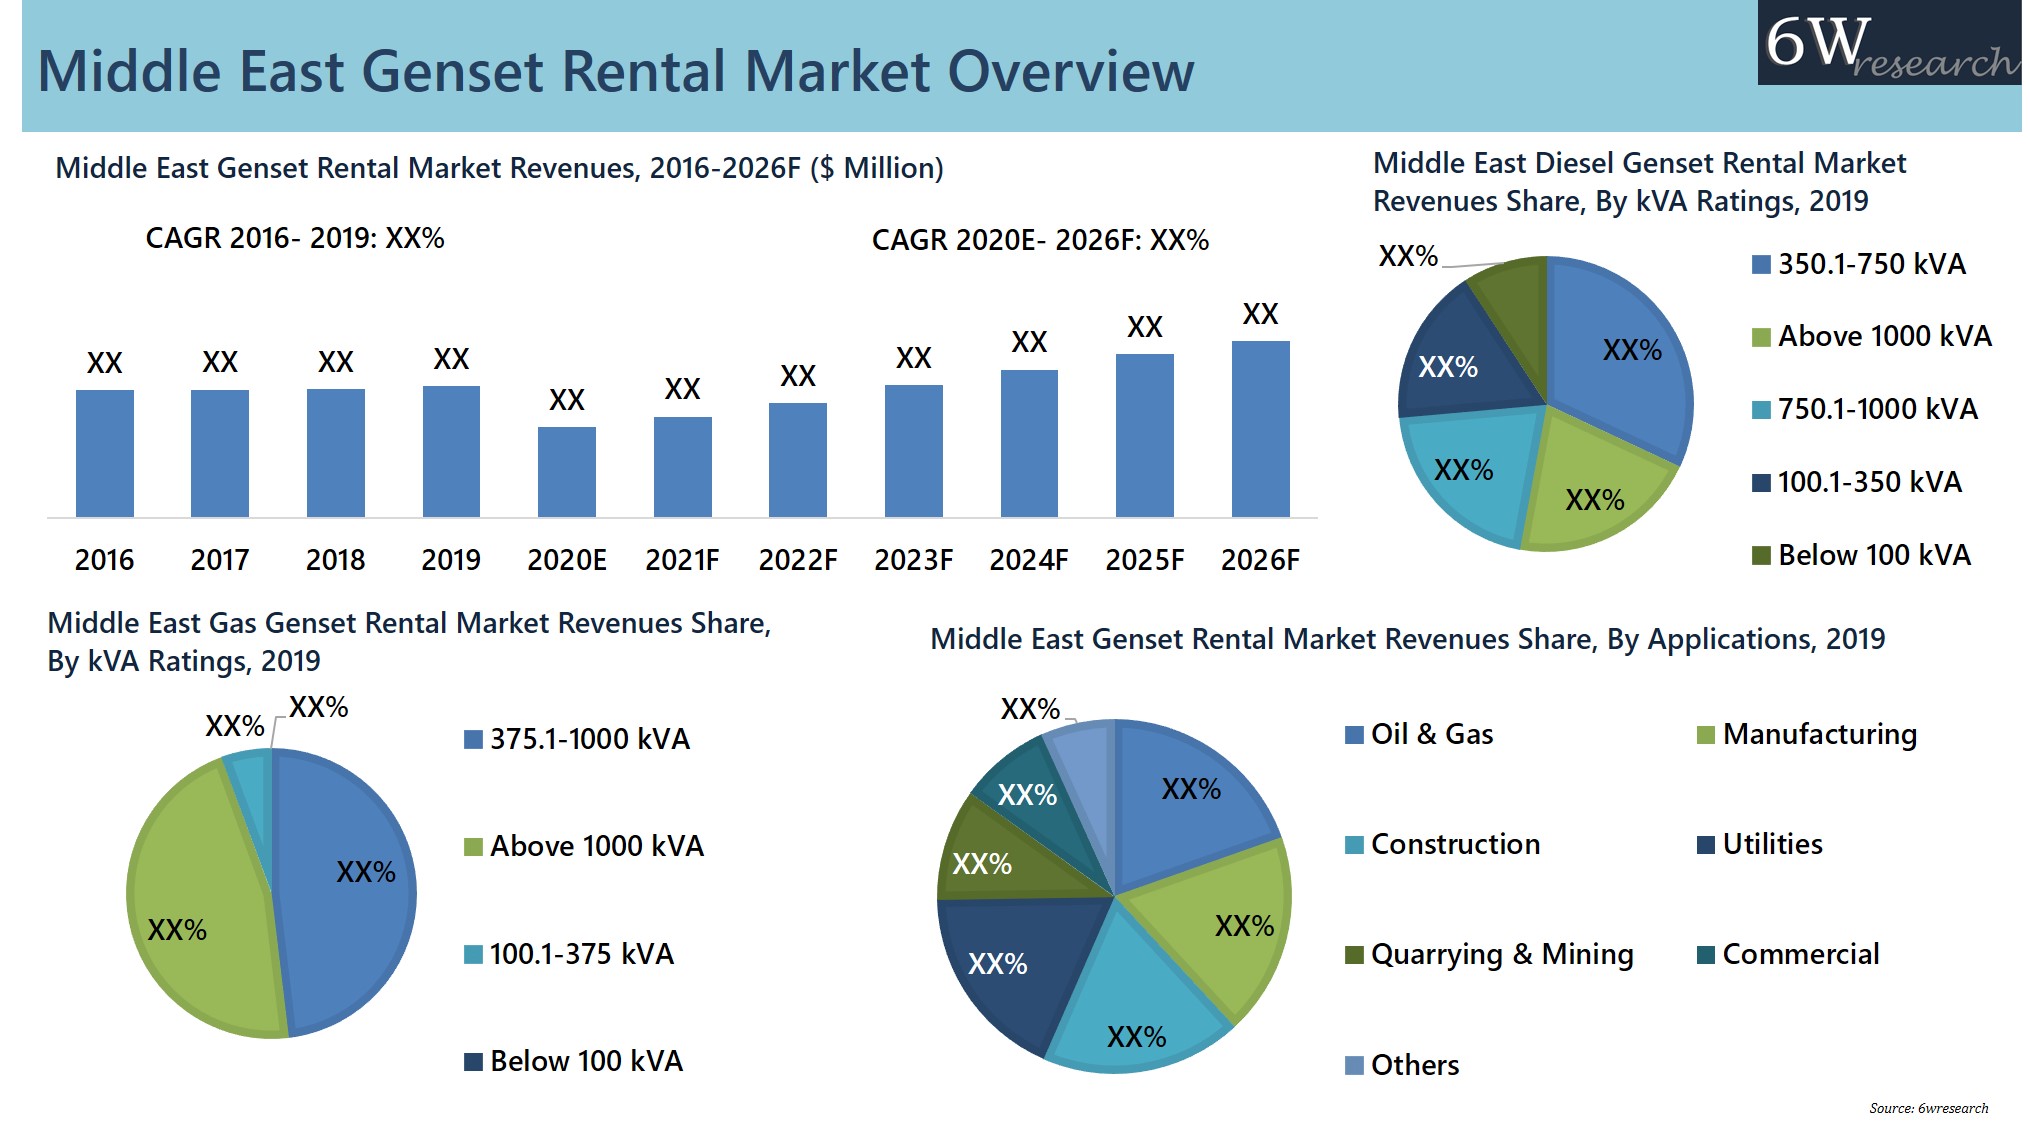 Middle East Genset Rental Market